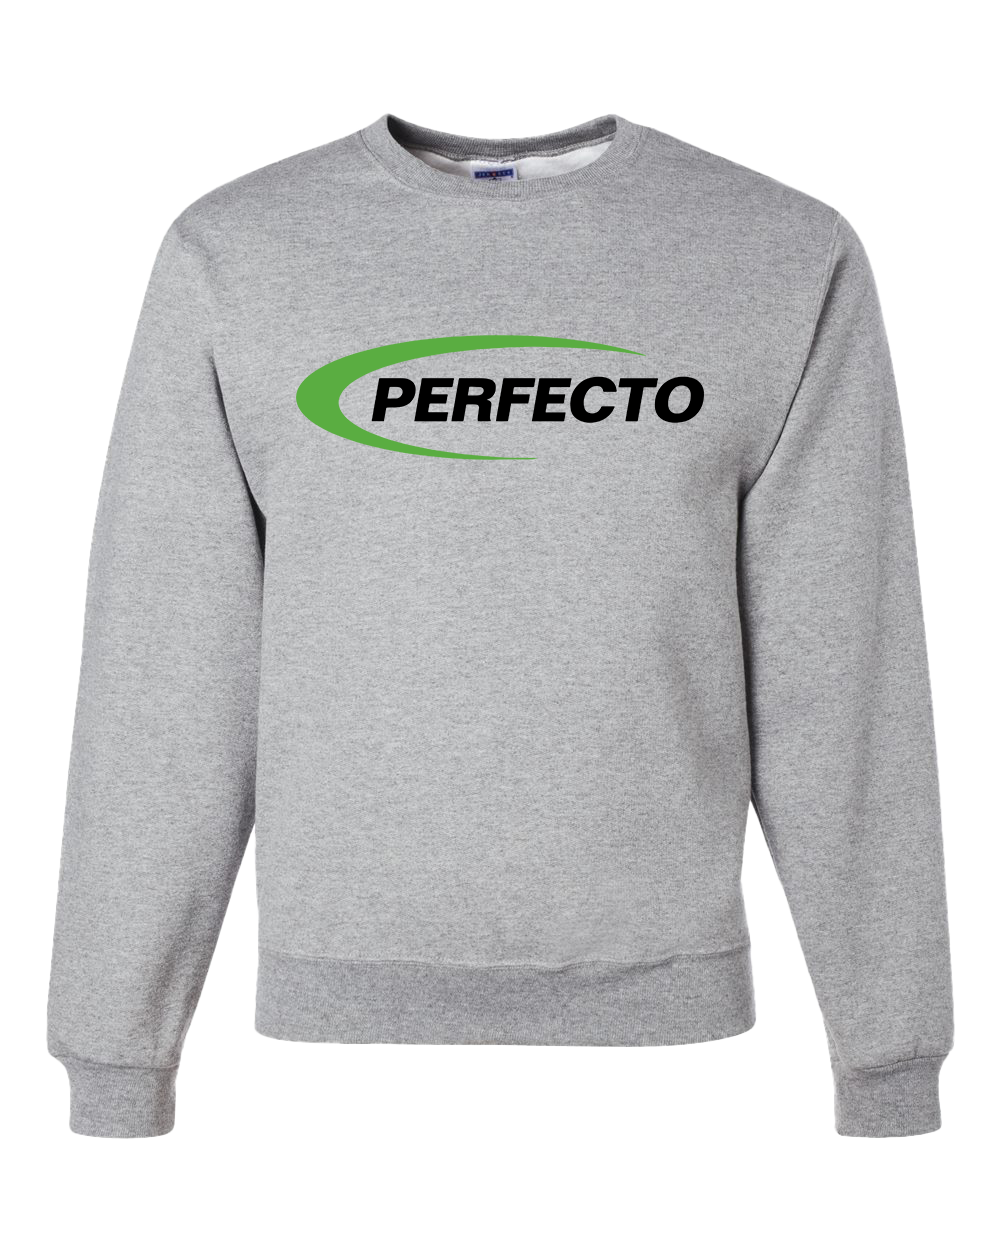 Perfecto Crew Sweatshirt - Athletic Heather